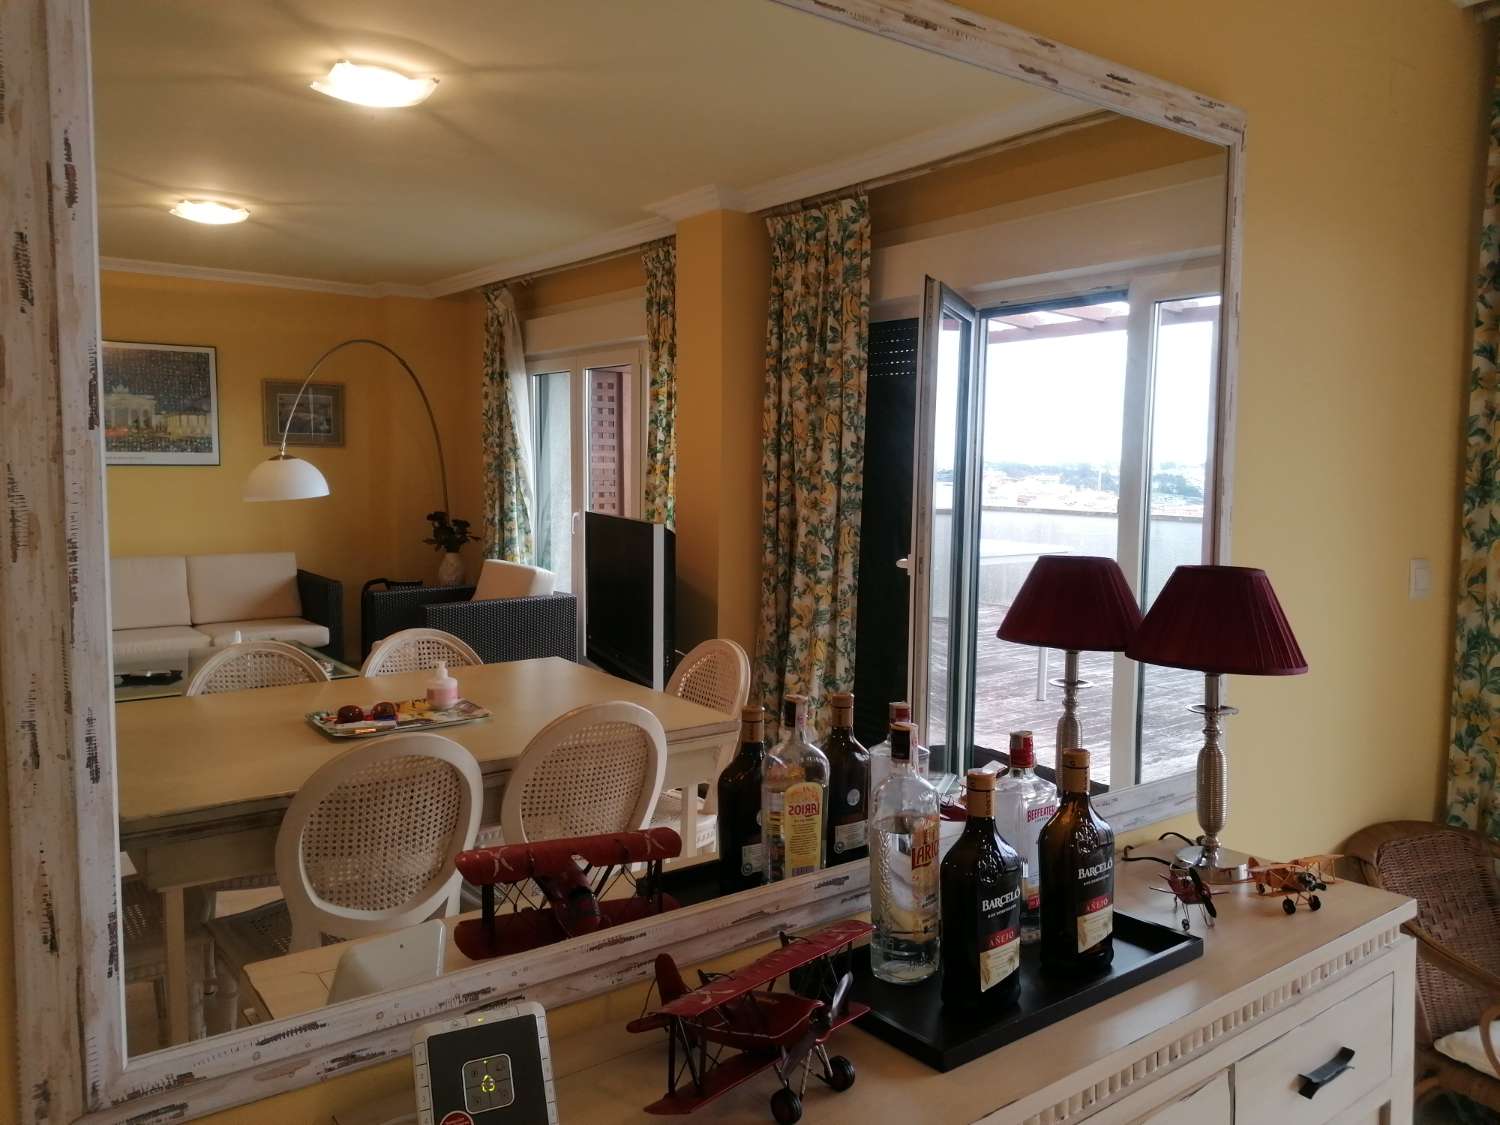 Sanxenxo : Penthouse avec terrasse spectaculaire donnant sur l’estuaire de Pontevedra...